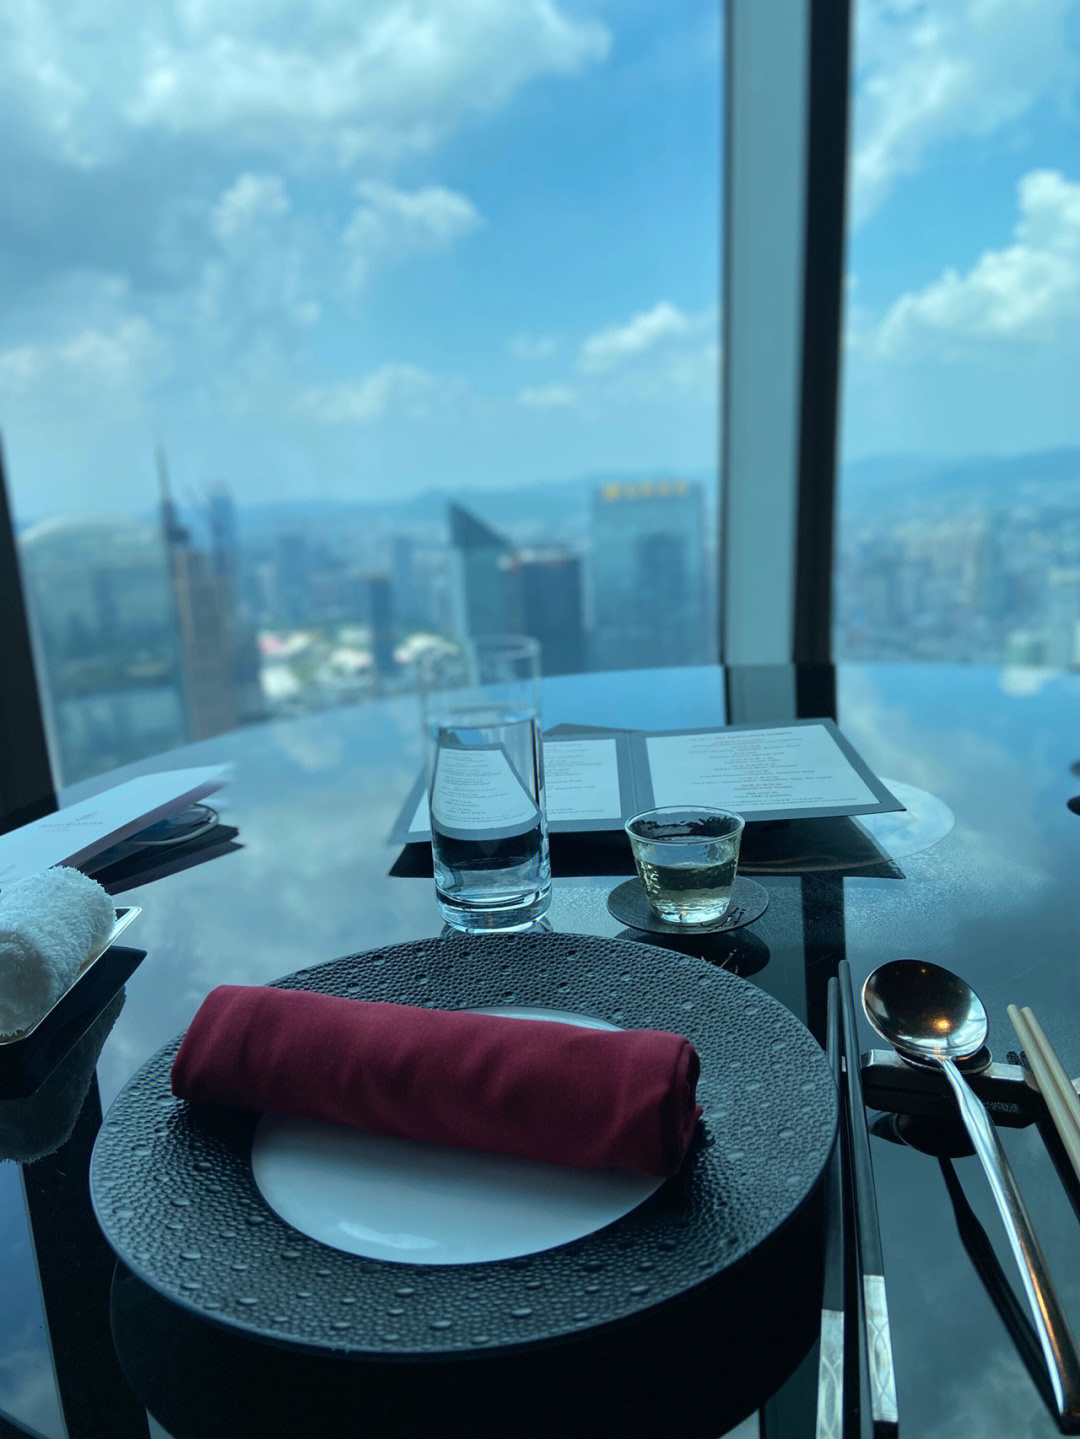 广州四季酒店72层餐厅图片